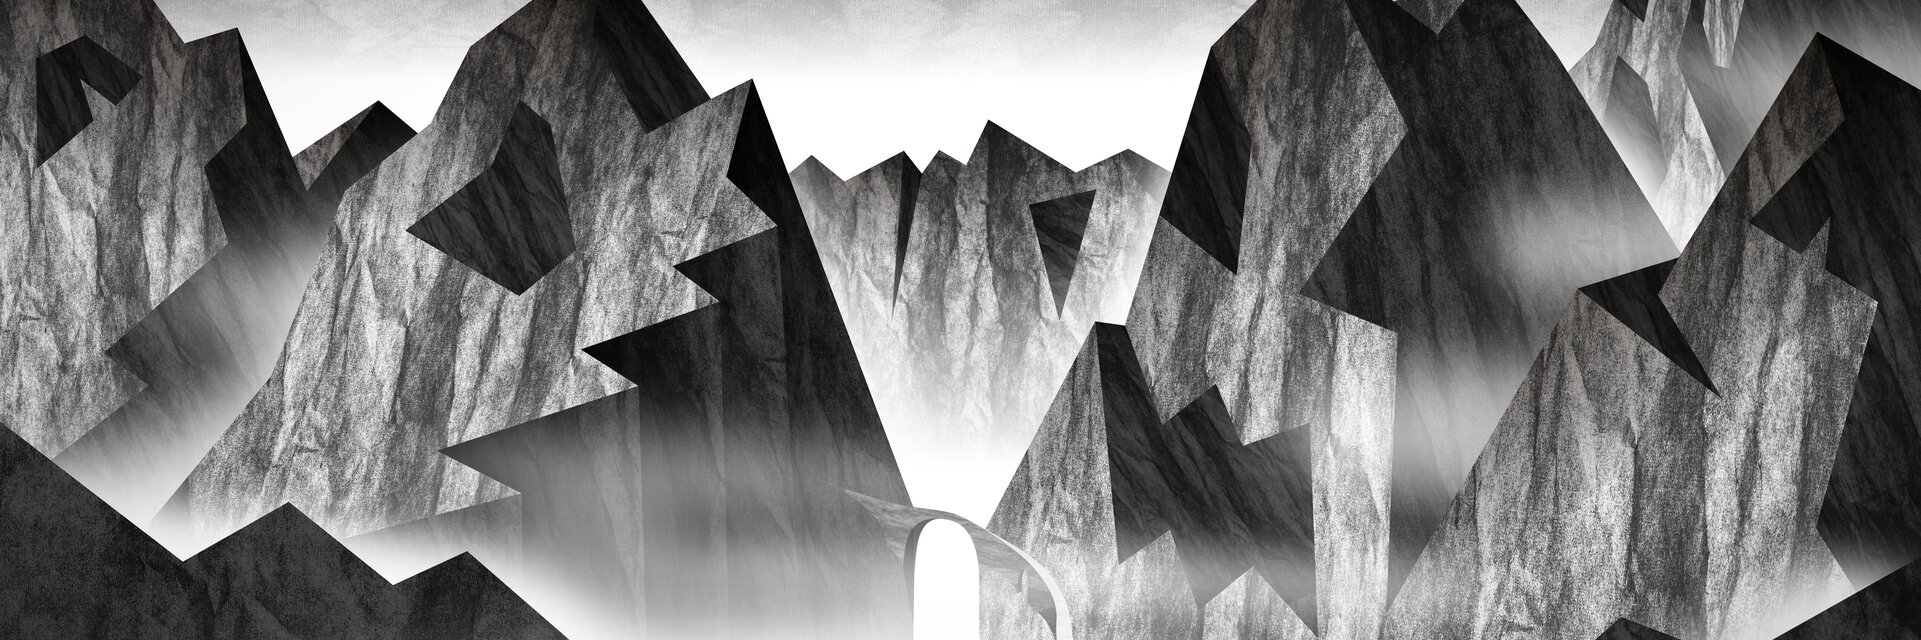 Immagine chiave della mostra "Spazio alpino leggendario" Paesaggio montano grigio con volti in ombra